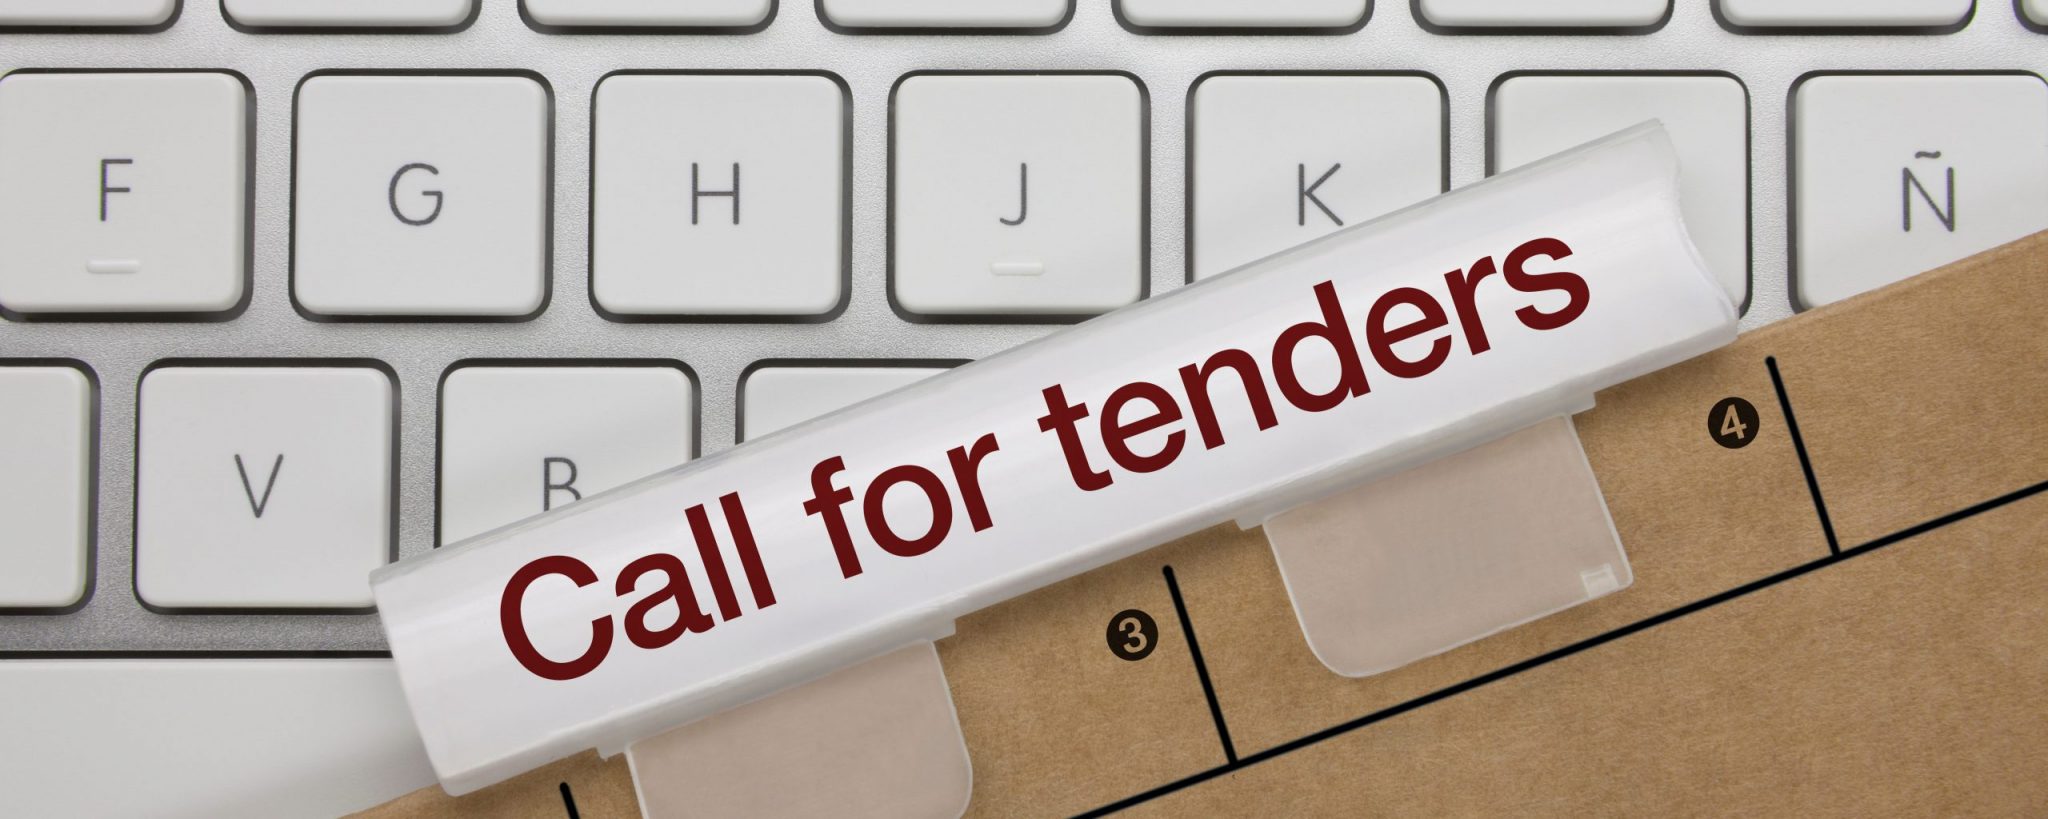 CALL FOR TENDER